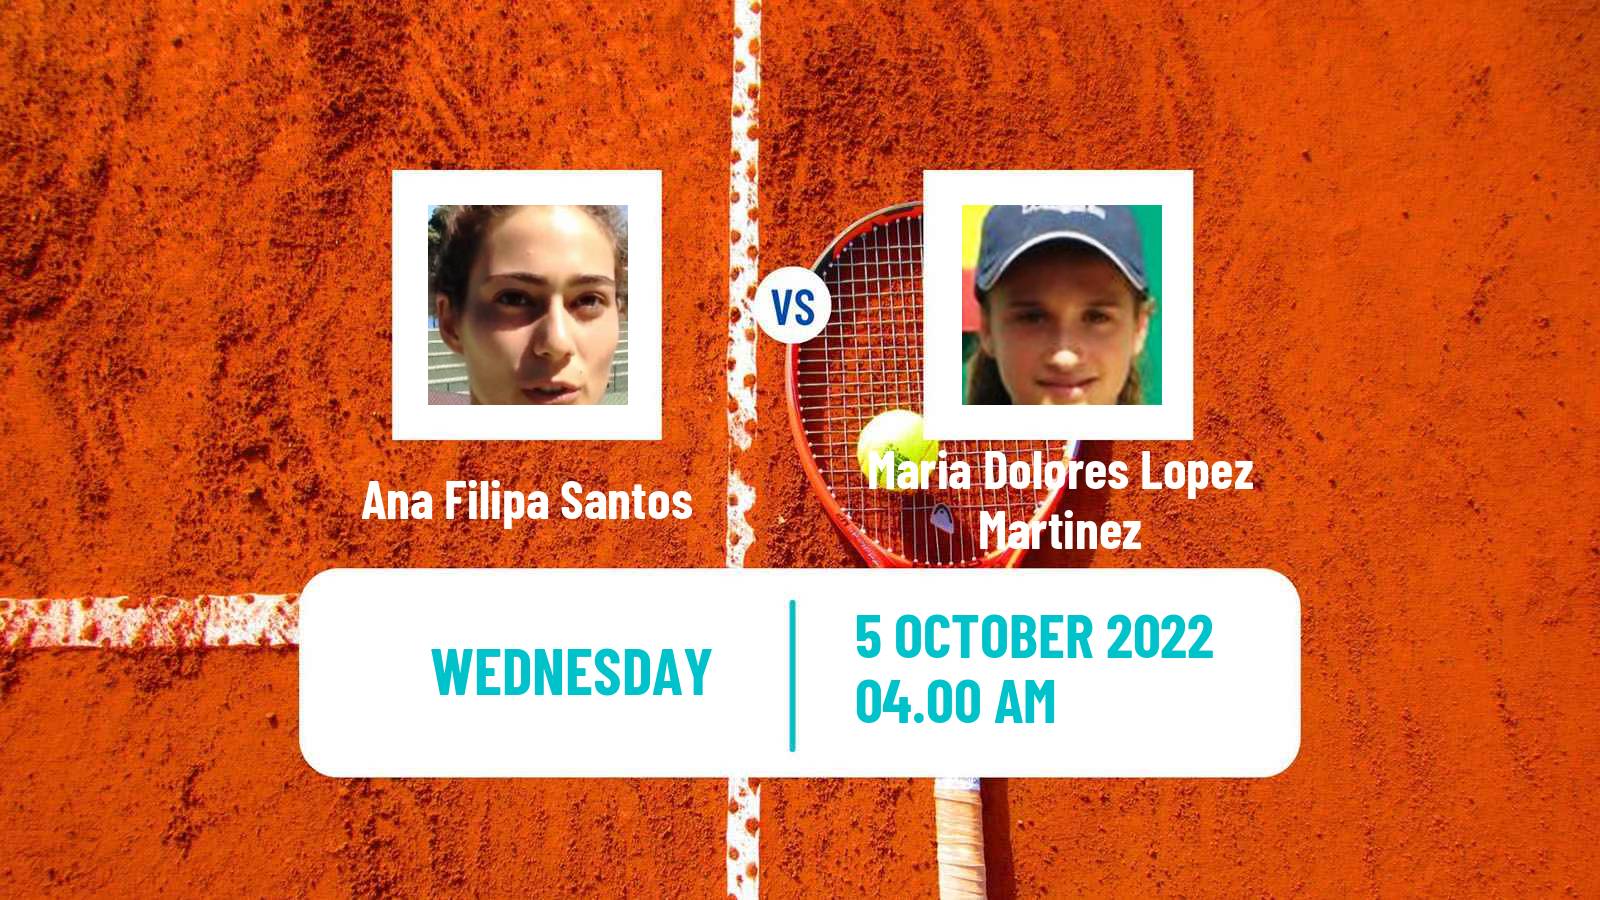 Tennis ITF Tournaments Ana Filipa Santos - Maria Dolores Lopez Martinez